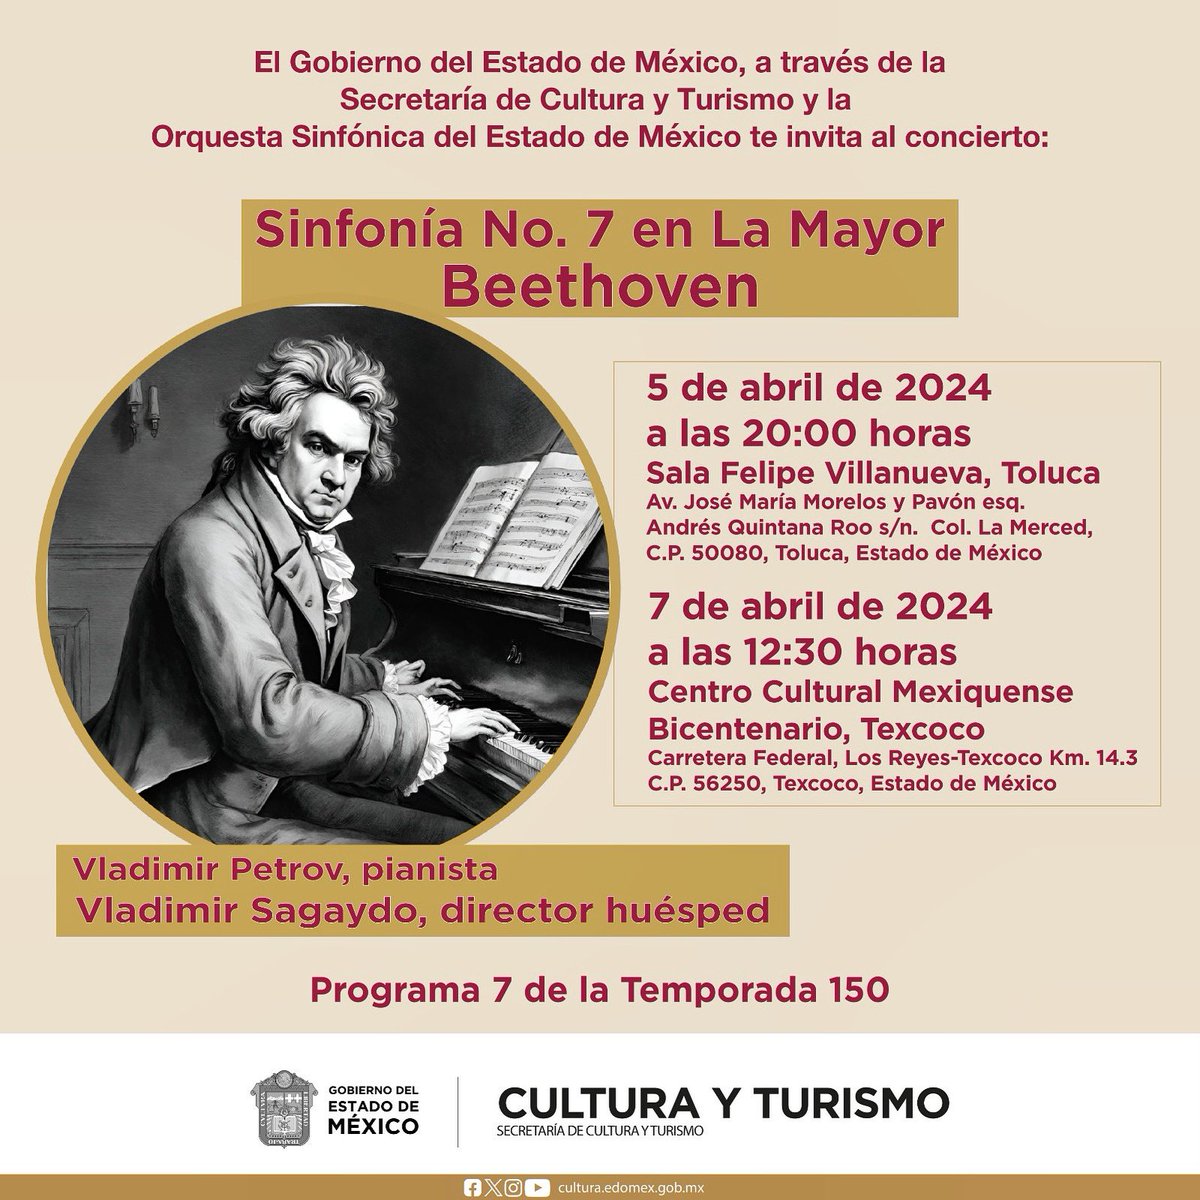 Para el #Programa7 de #La150, sube al podio como director huésped, el maestro @sagaydo, Interpretaremos la gran Sinfonía No. 7 de Beethoven. 📍5 de abril, 20 horas, Sala Felipe Villanueva, Toluca. 📍7 de abril, 12:30 horas, @ccmbcultura, Texcoco.